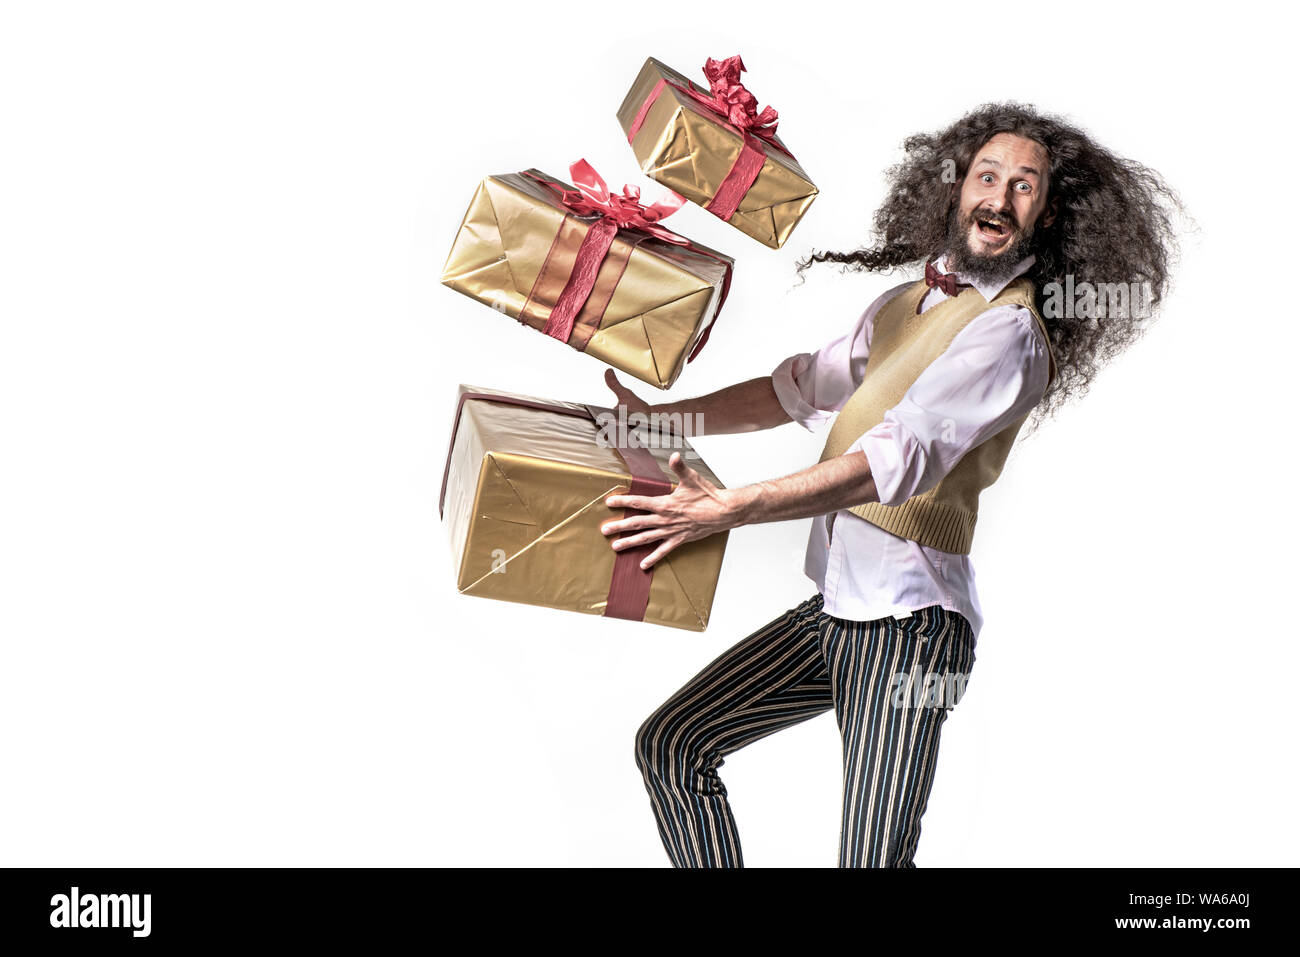 Ritratto concettuale di un uomo colorato in esecuzione con un sacco di regali Foto Stock